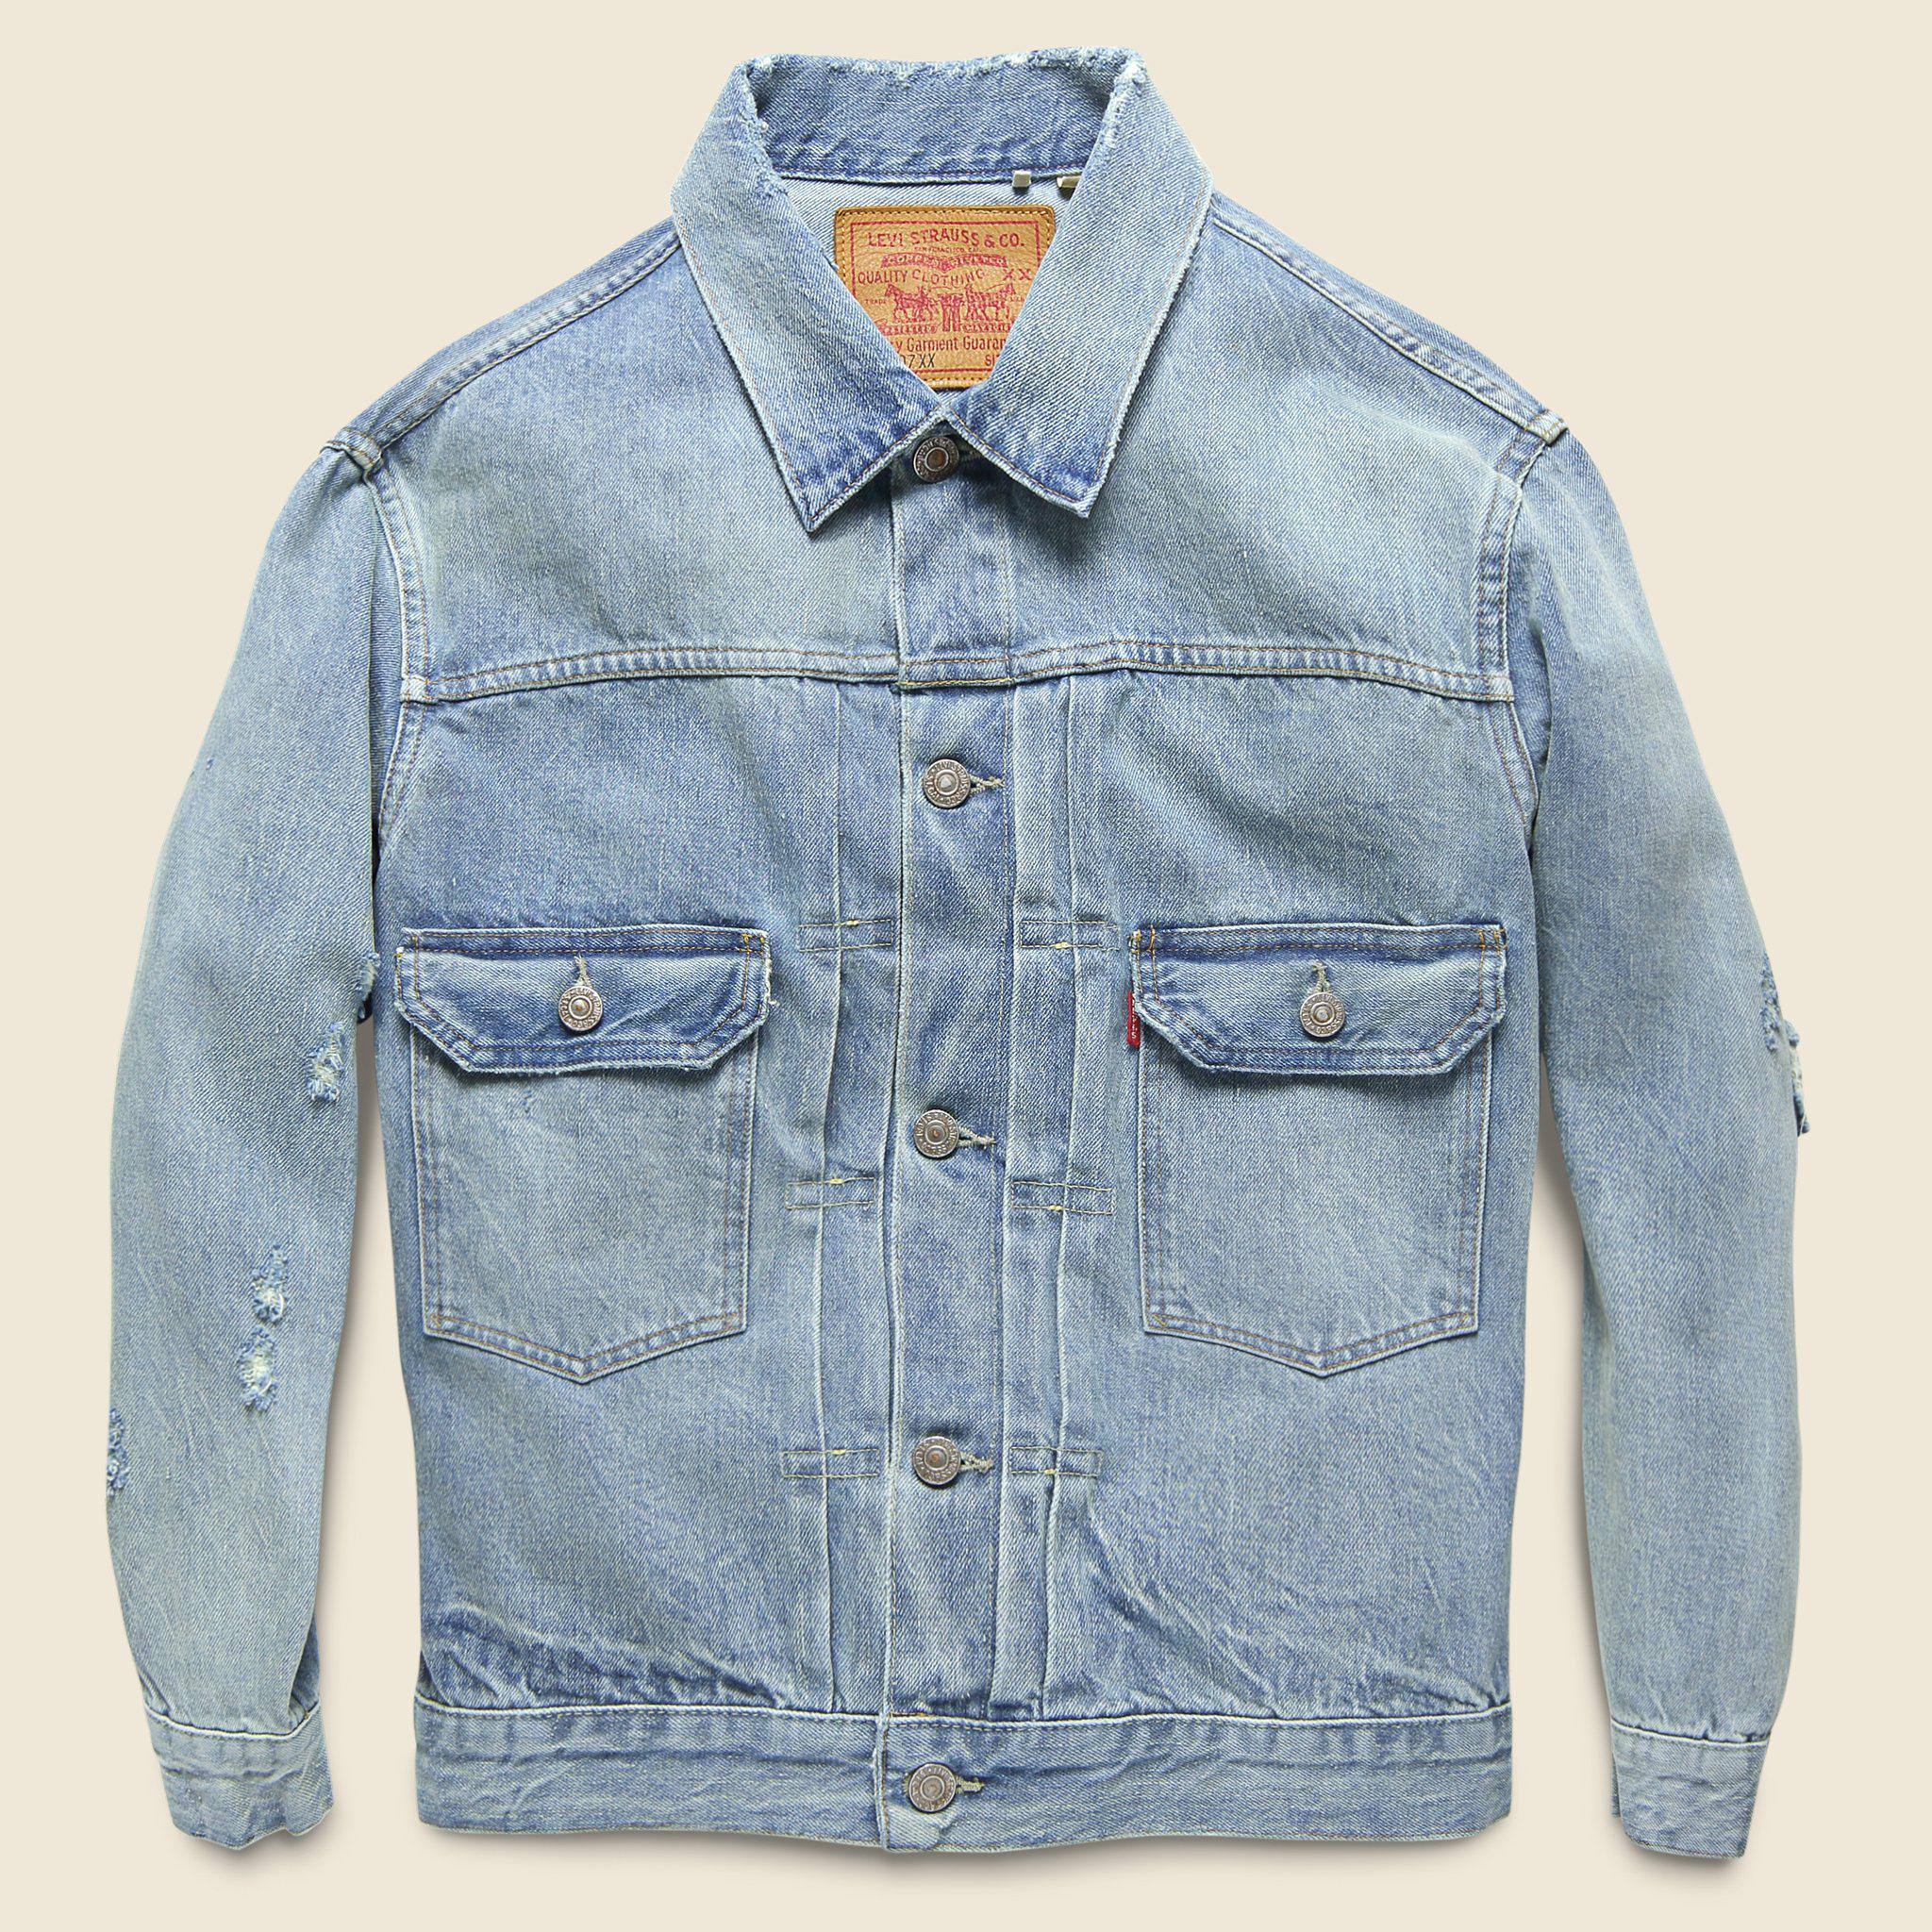 1953 type ii jacket